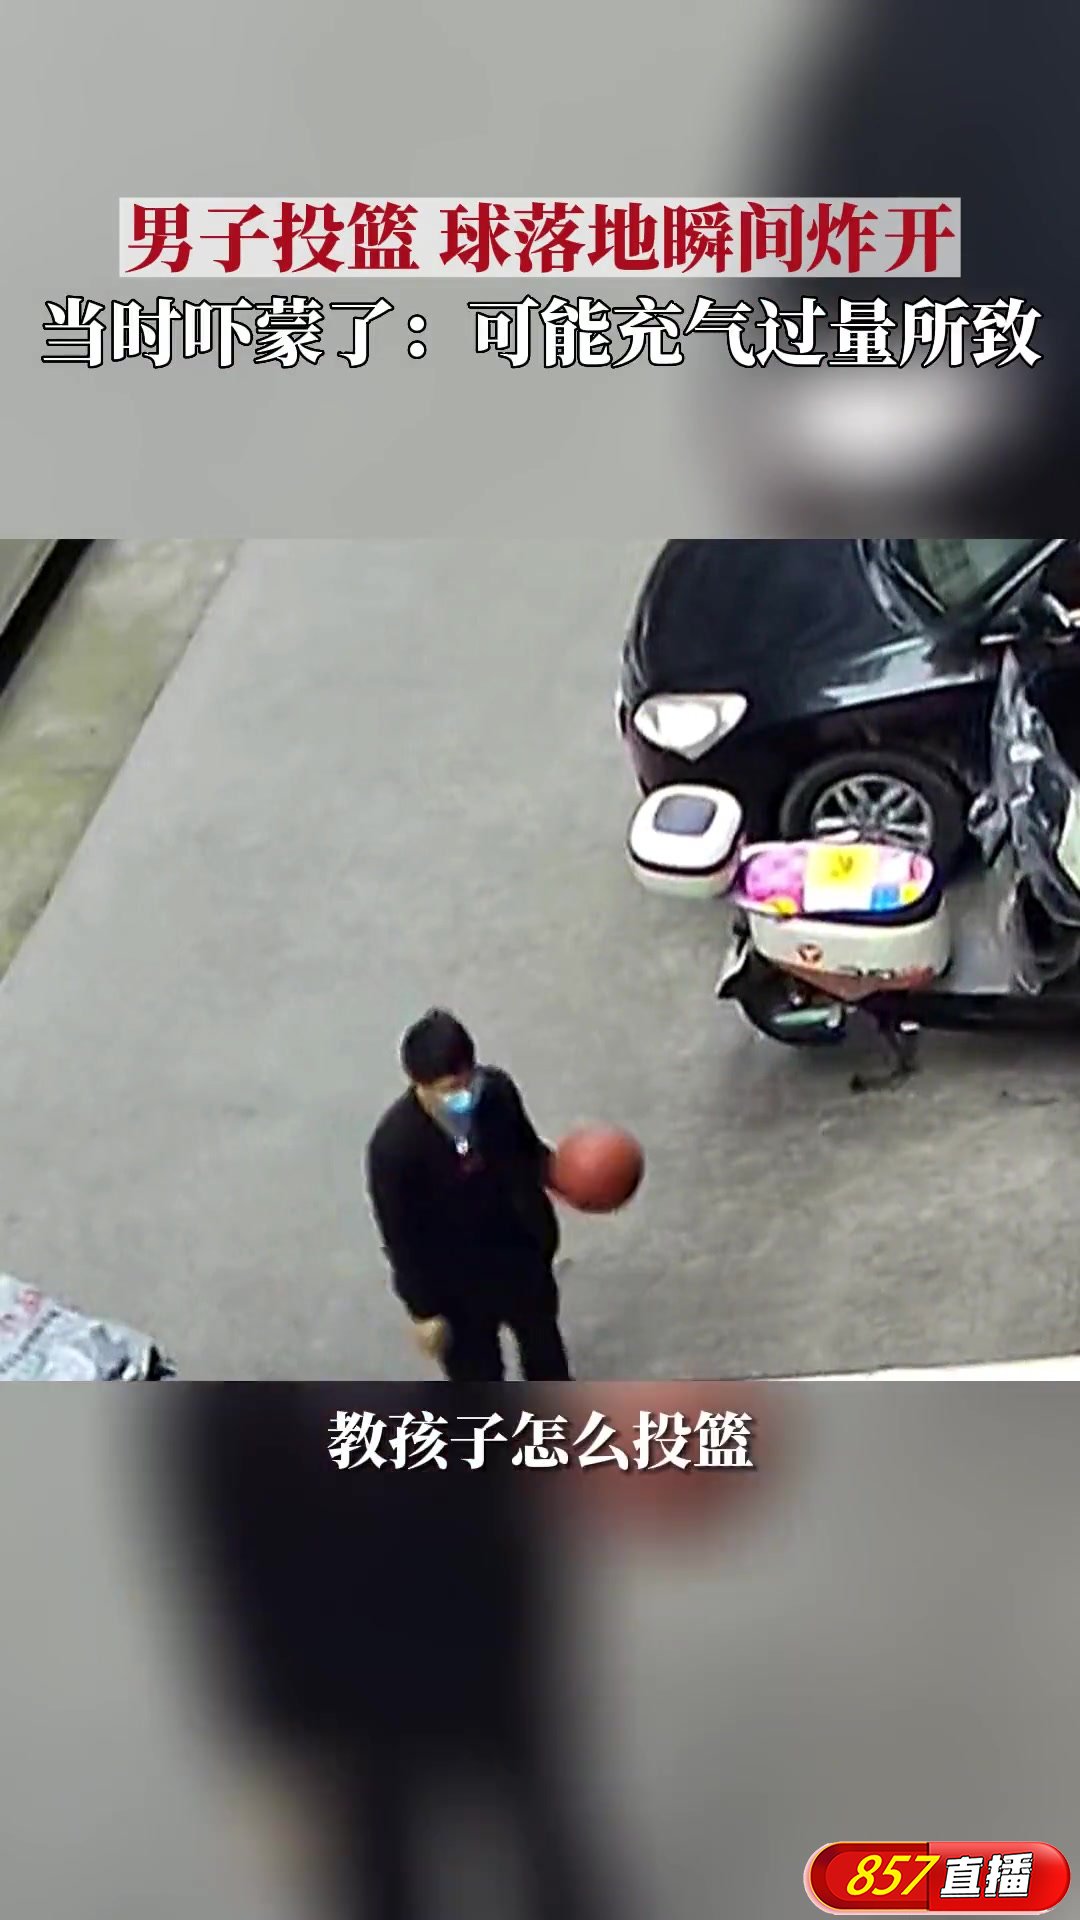 重庆男子投篮时篮球落地瞬间炸开 可能系充气过量所致？